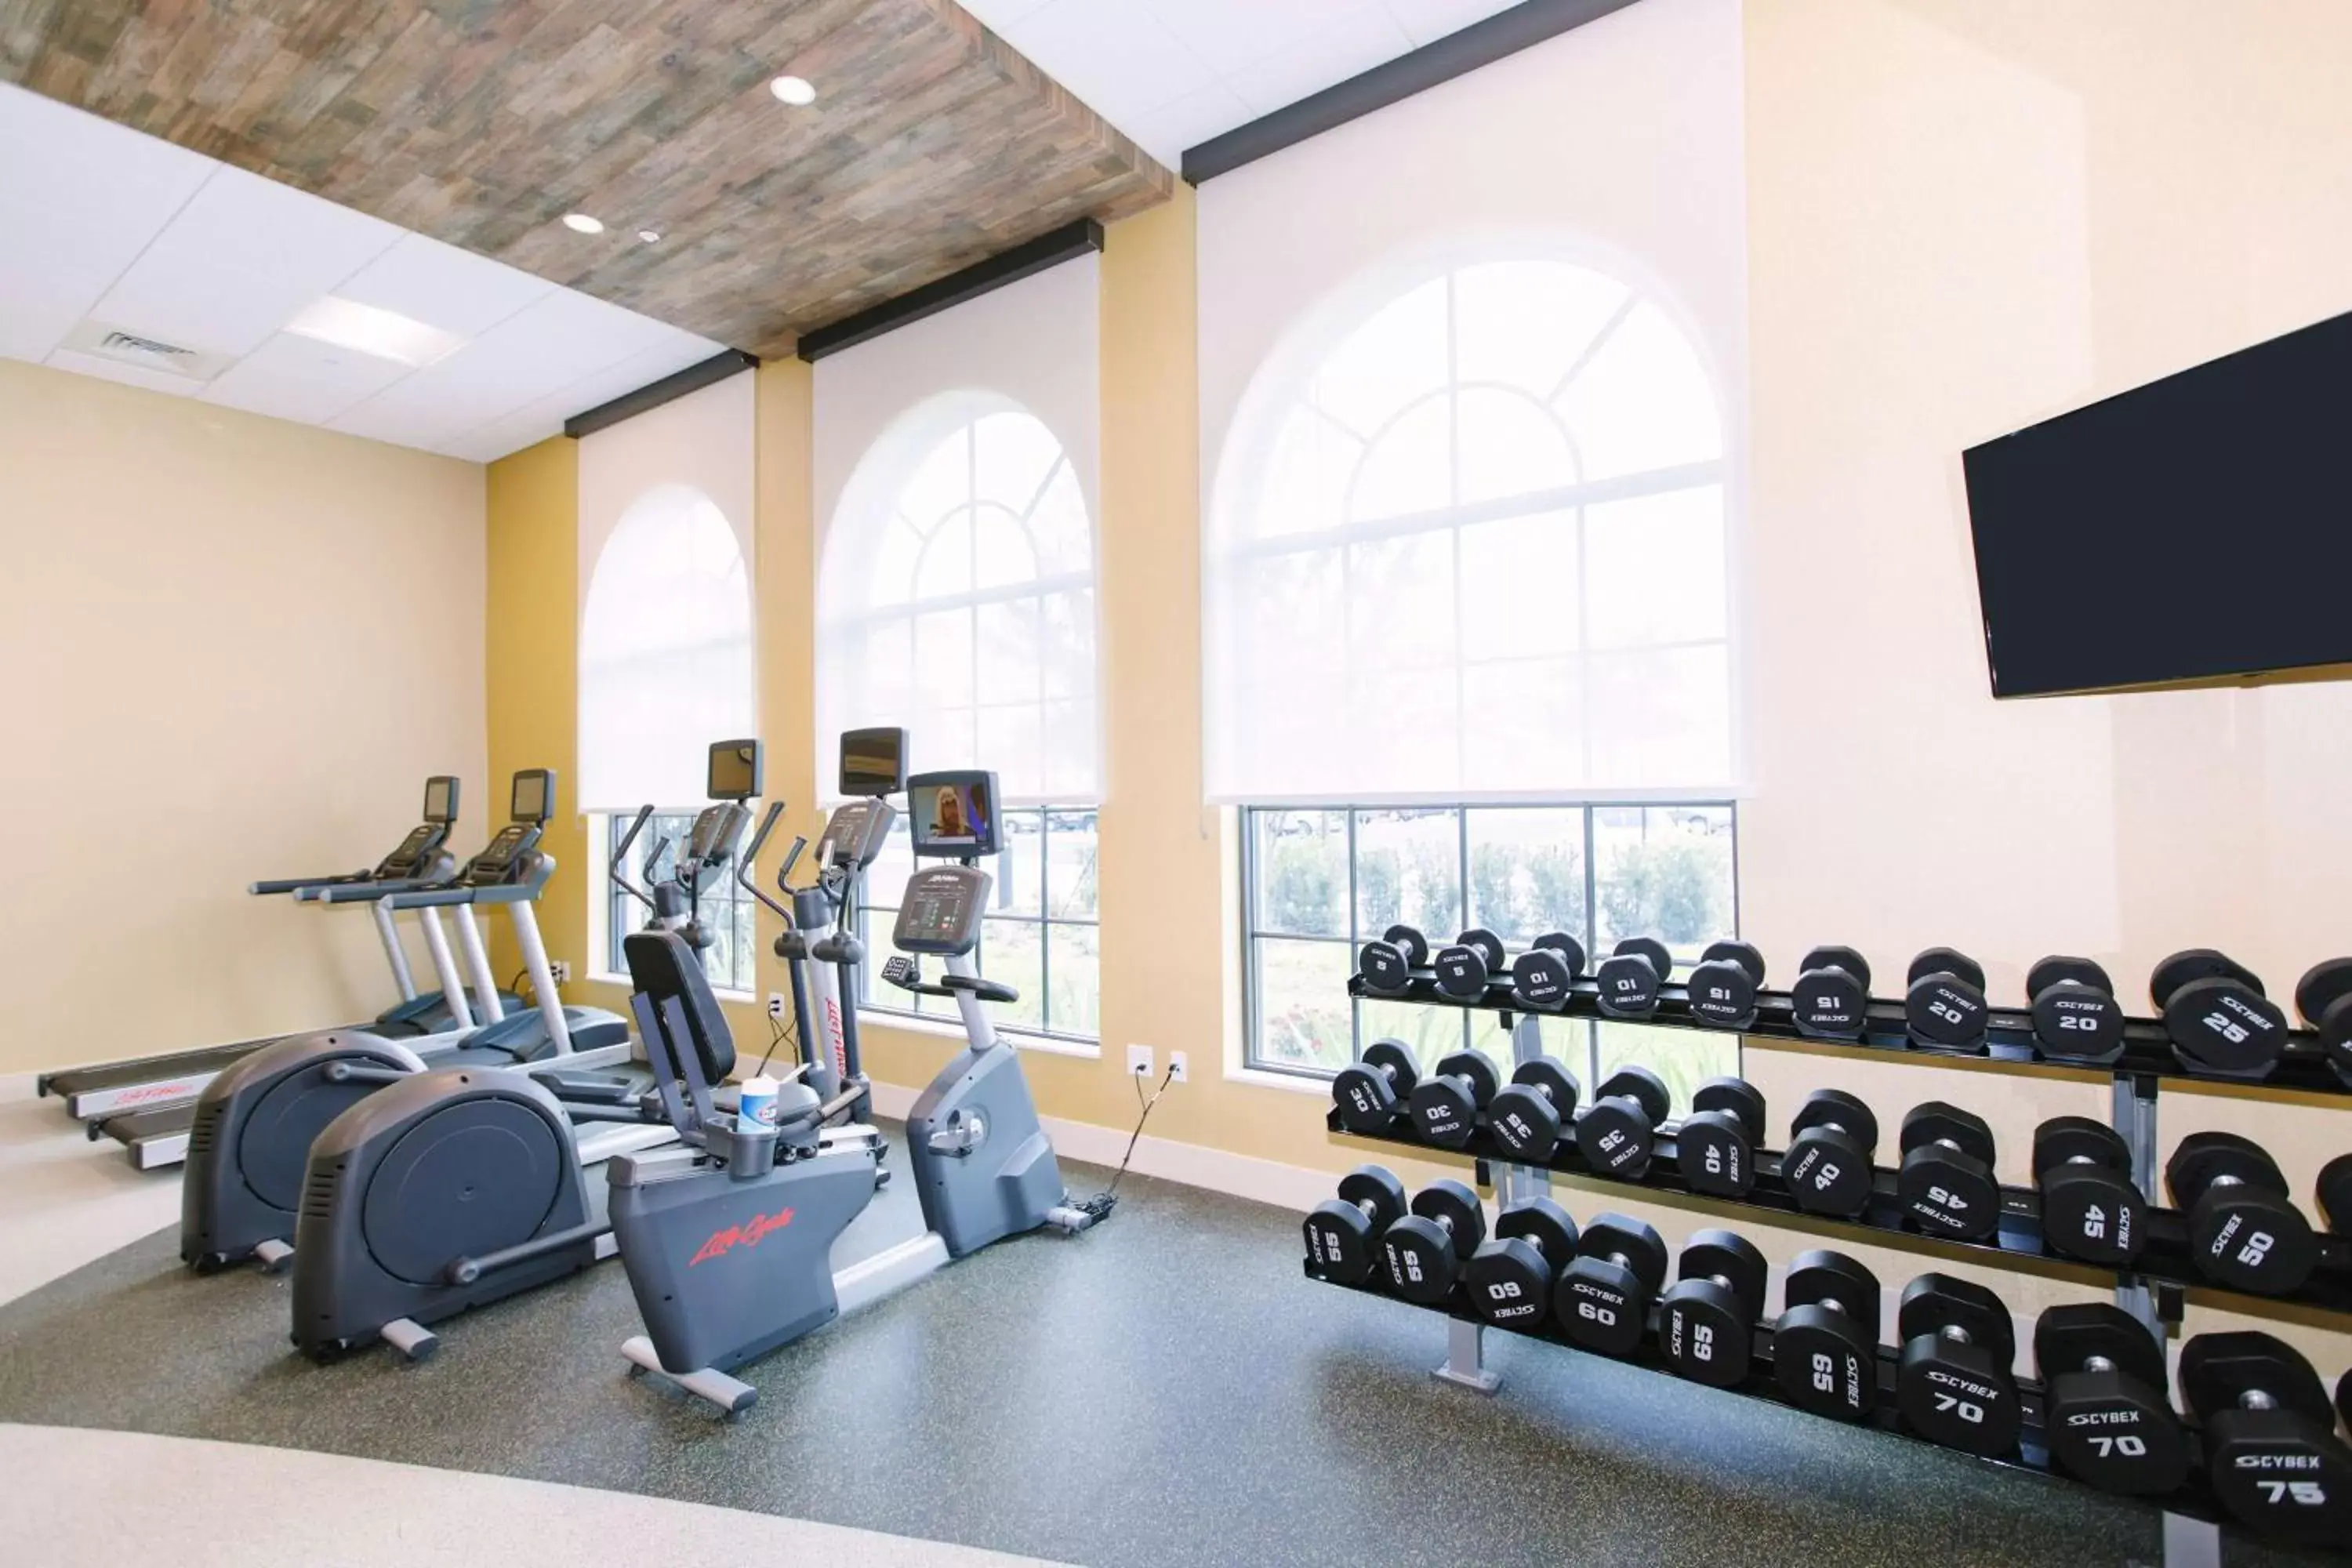 Fitness centre/facilities, Fitness Center/Facilities in Hilton Garden Inn Winter Park, FL